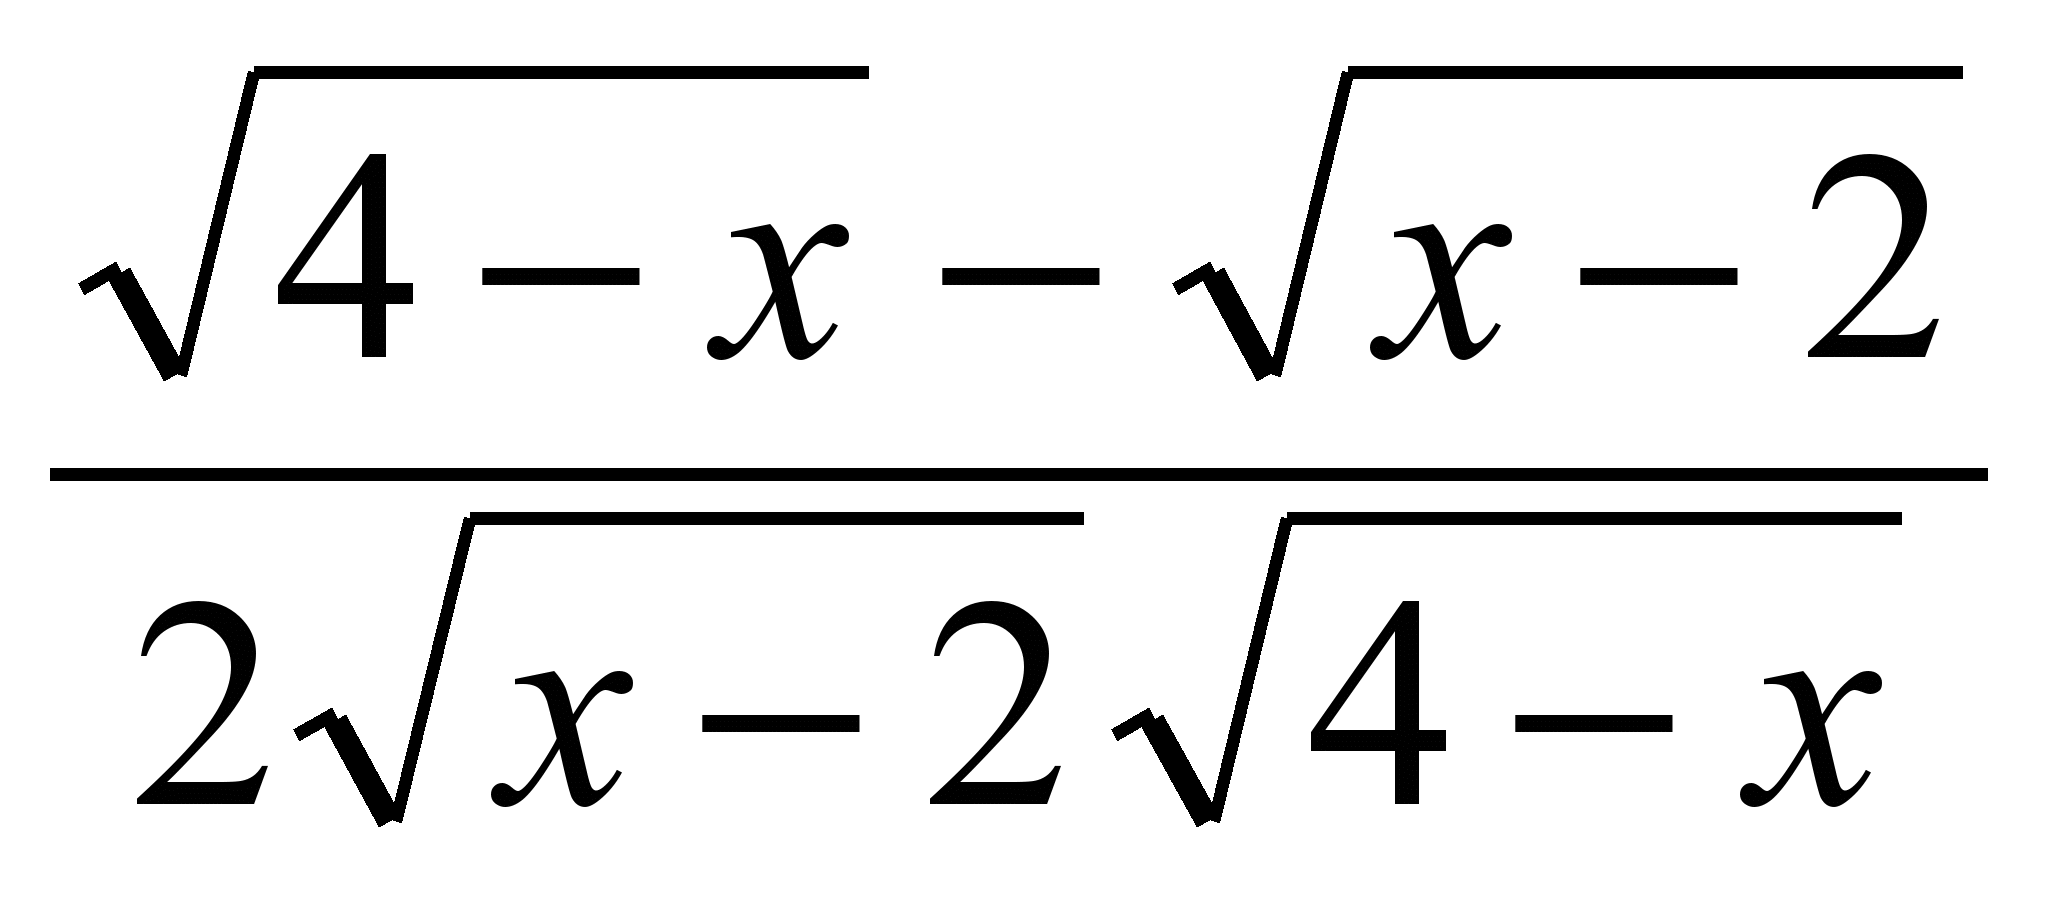 Урок математики в 10-м(профильном) классе по теме: «Иррациональные уравнения»